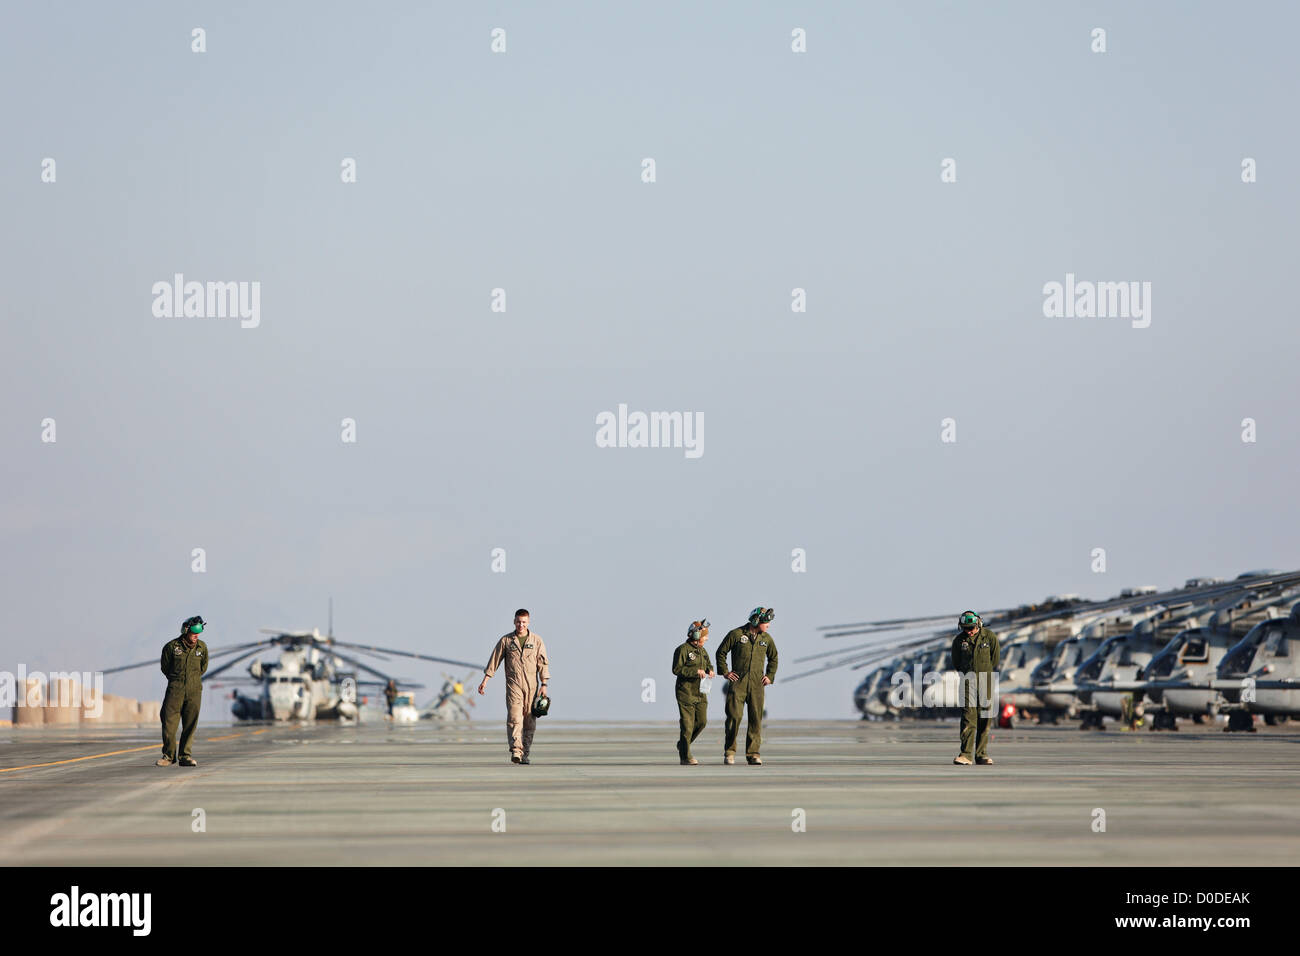 Stati Uniti Aviazione marino marinai ispezionare di rullaggio Camp Bastion provincia di Helmand in Afghanistan i detriti che può essere aspirata nel motore Foto Stock